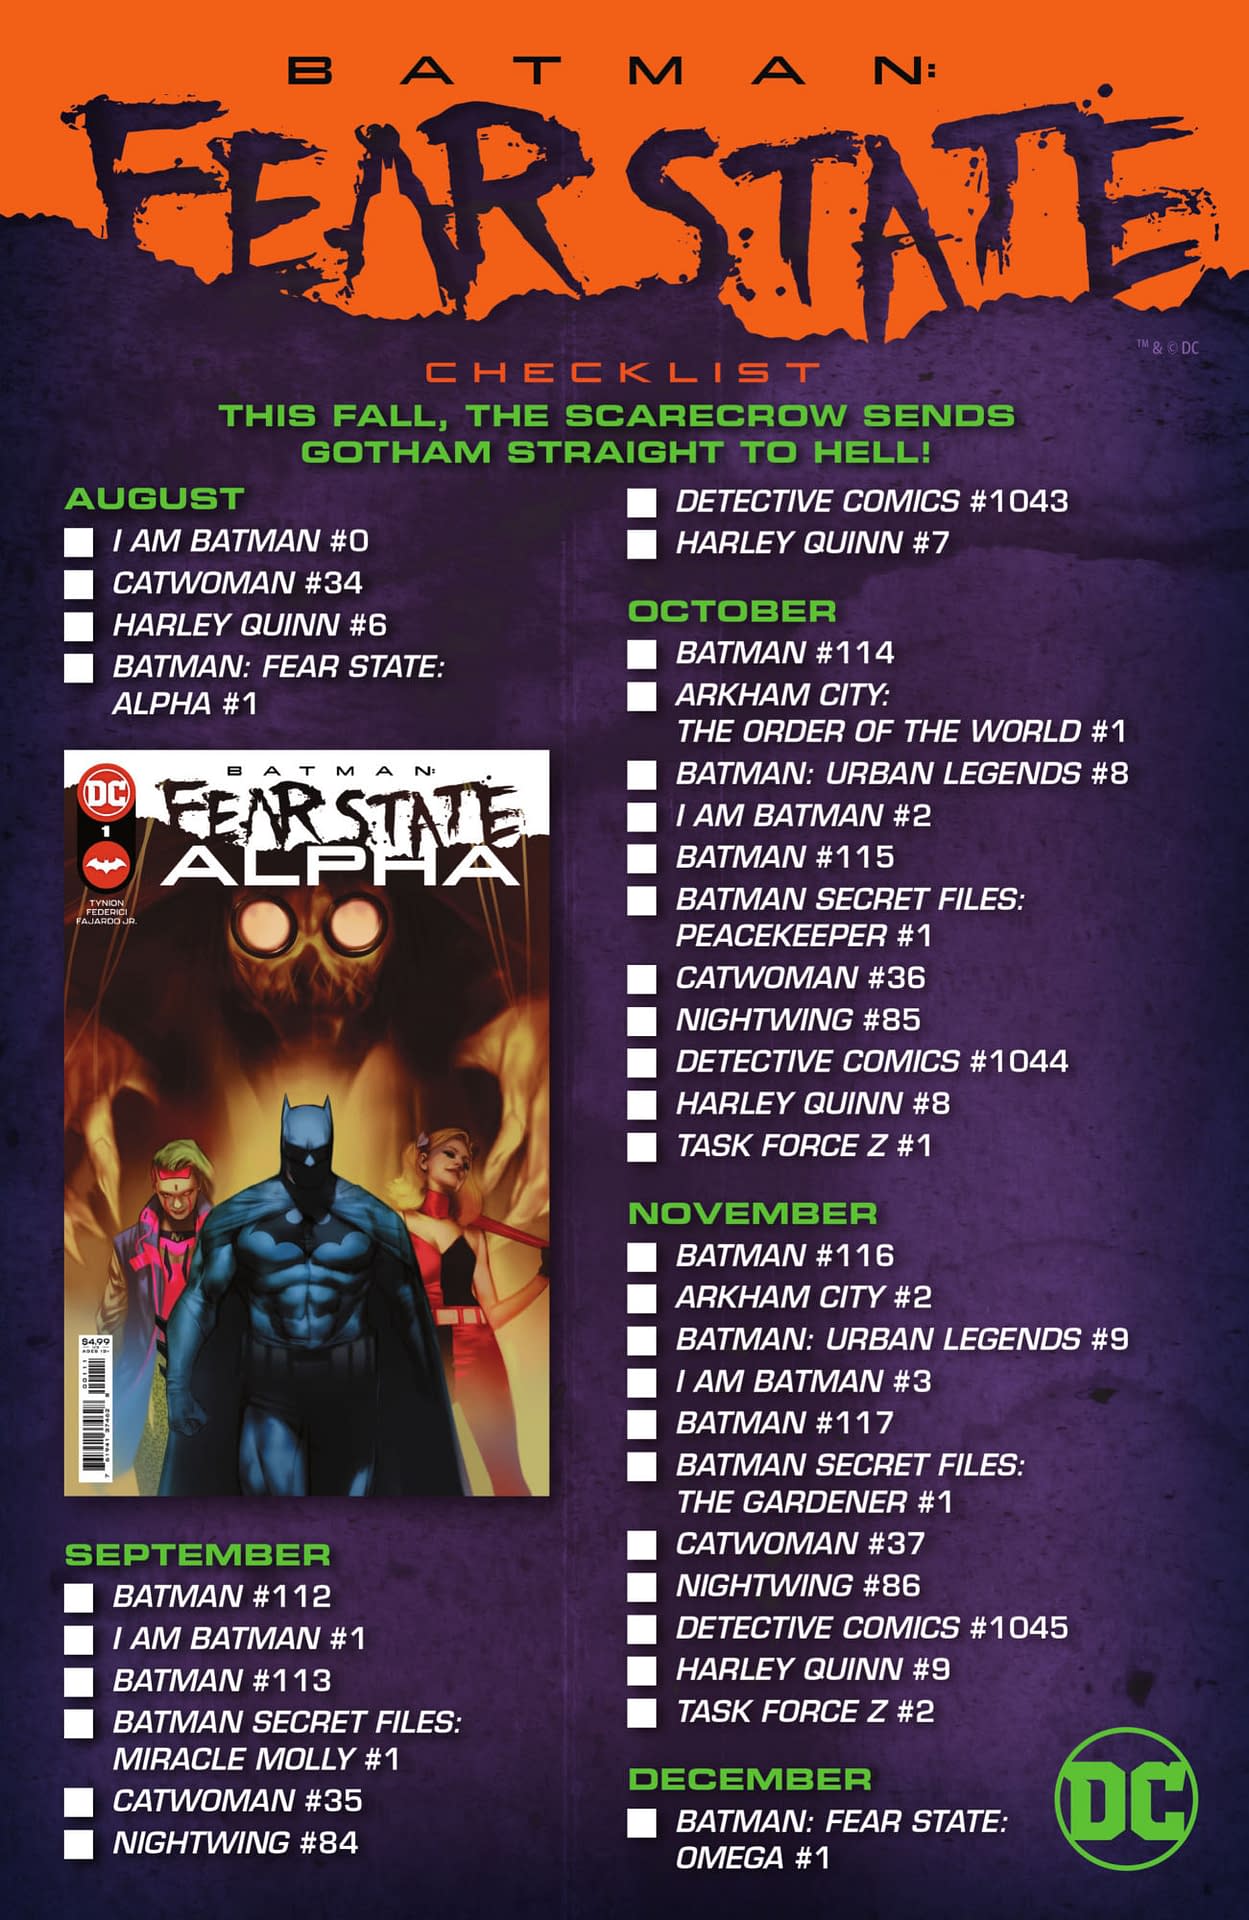 DC Fear State Comic Checklist